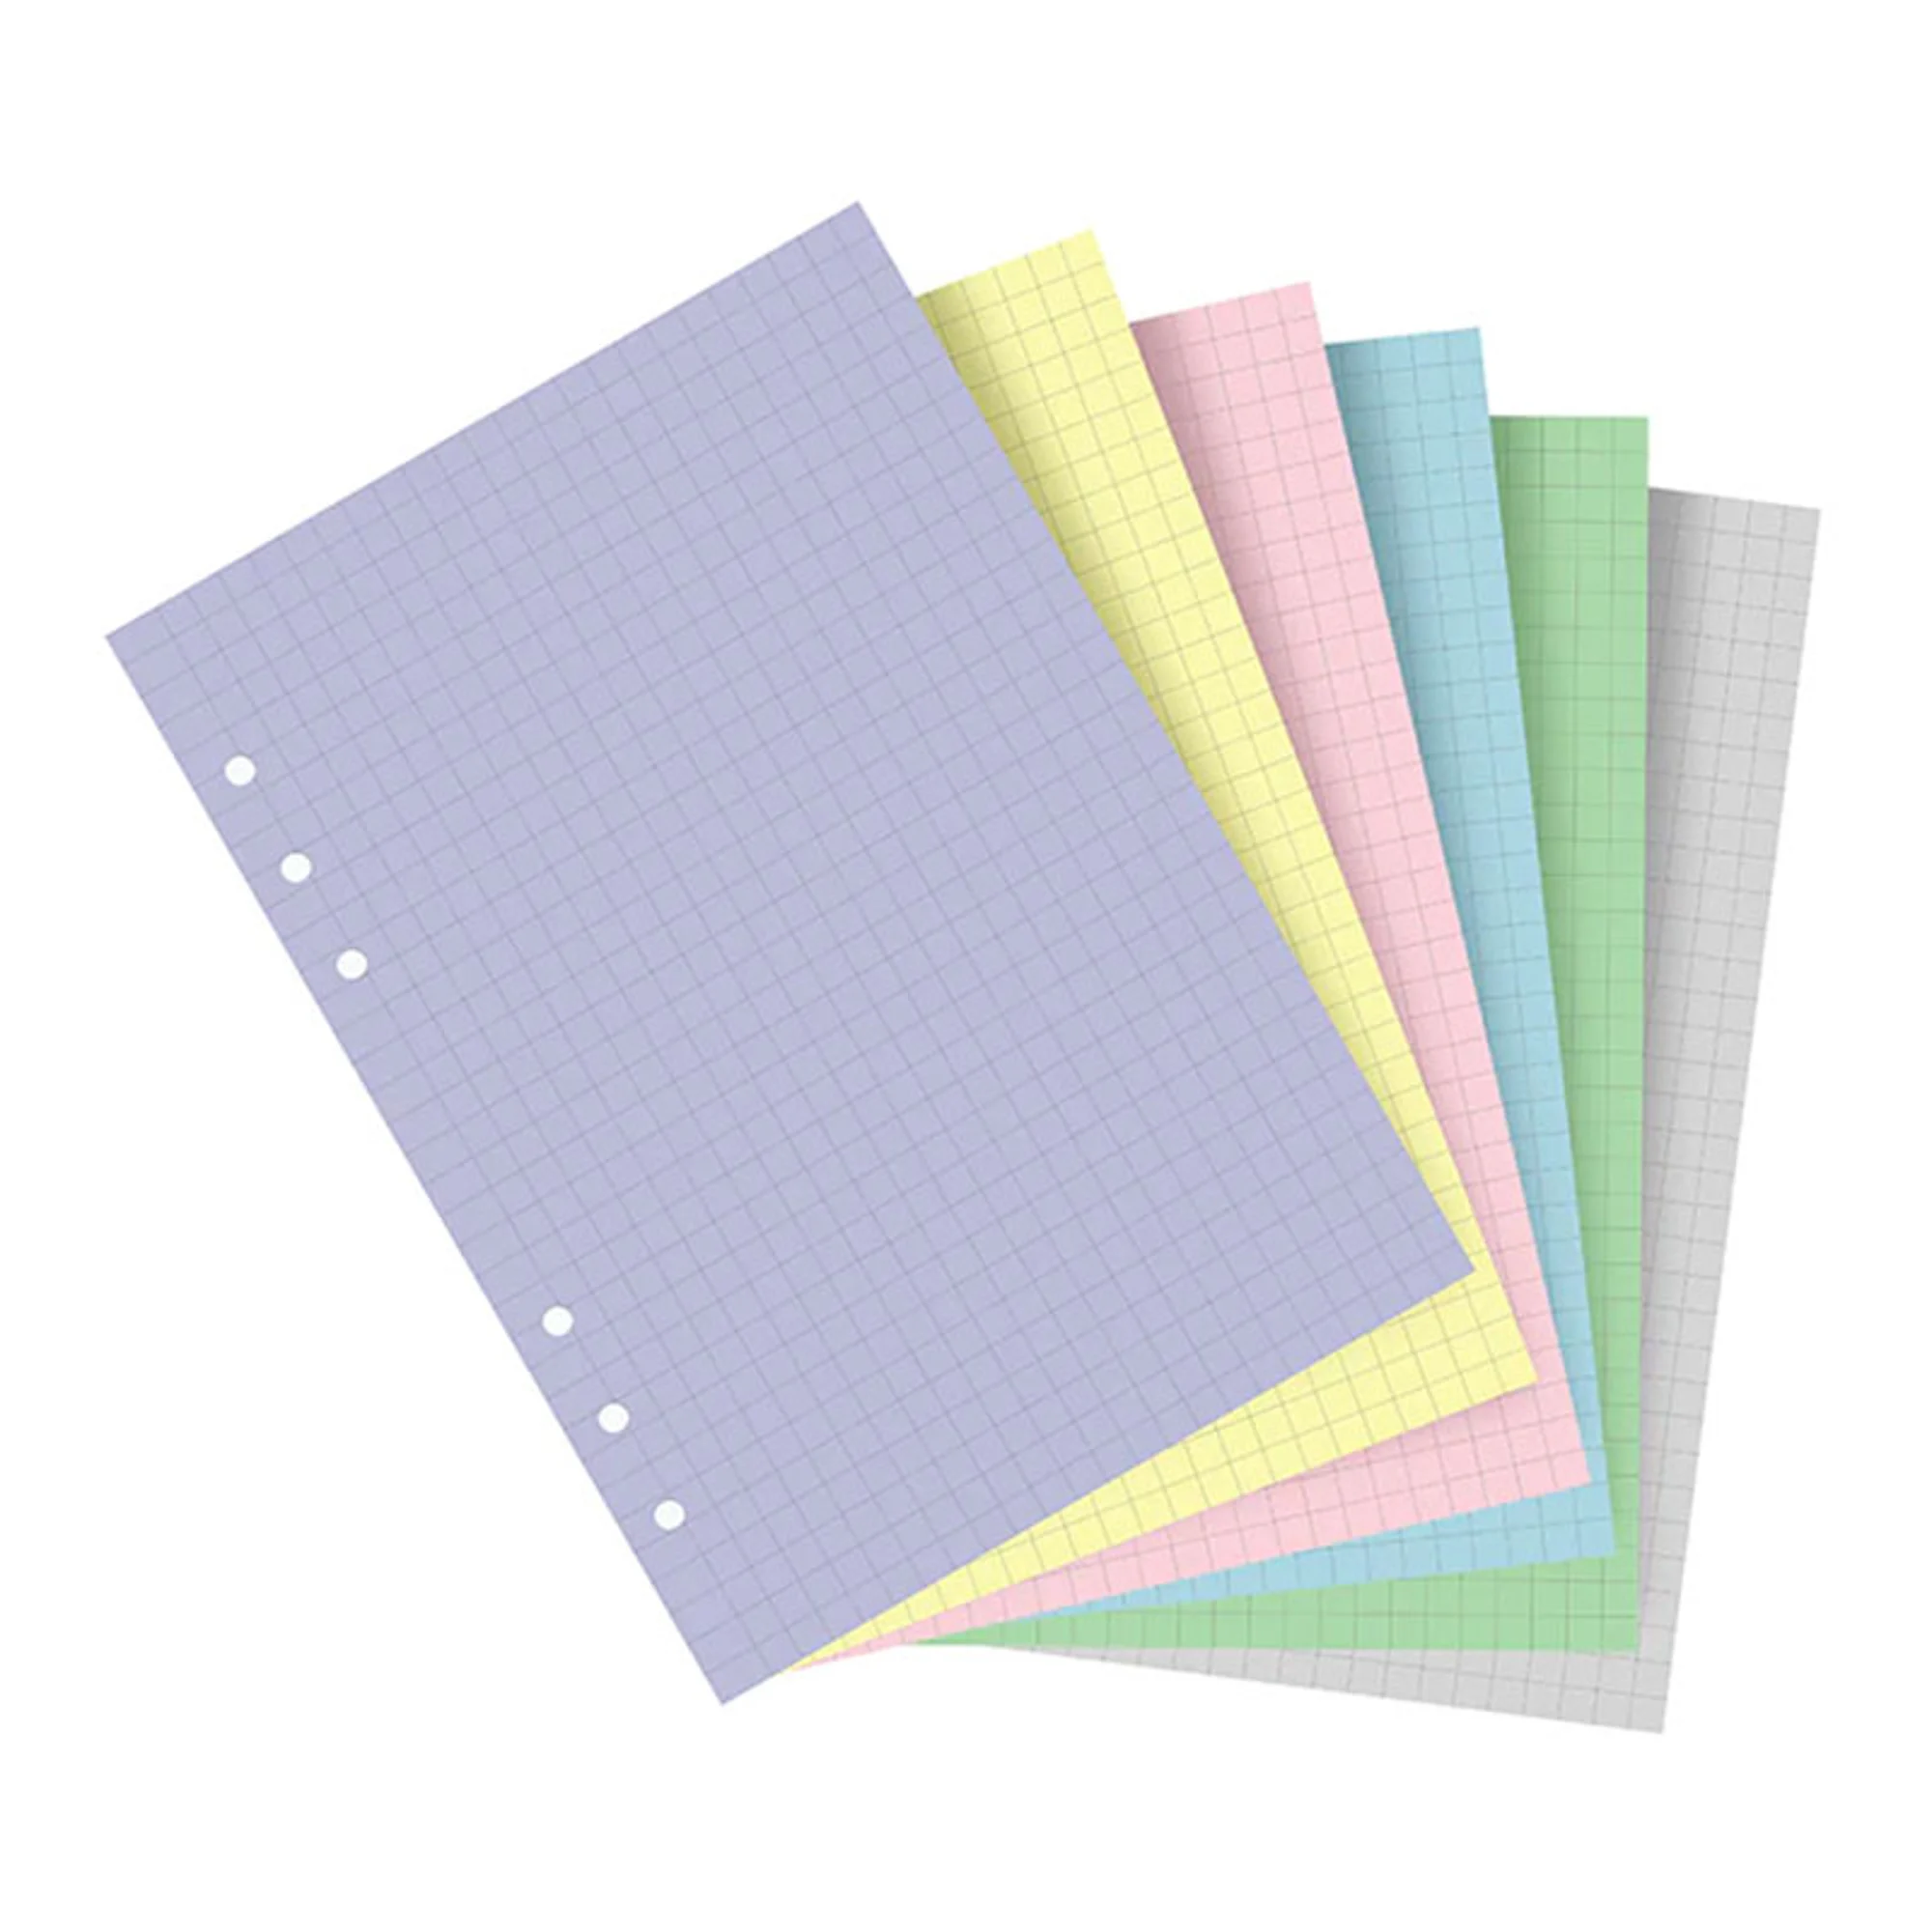 Пълнител за органайзер Filofax A5 - 60 цветни листа в пастелни тонове, на малки квадратчета